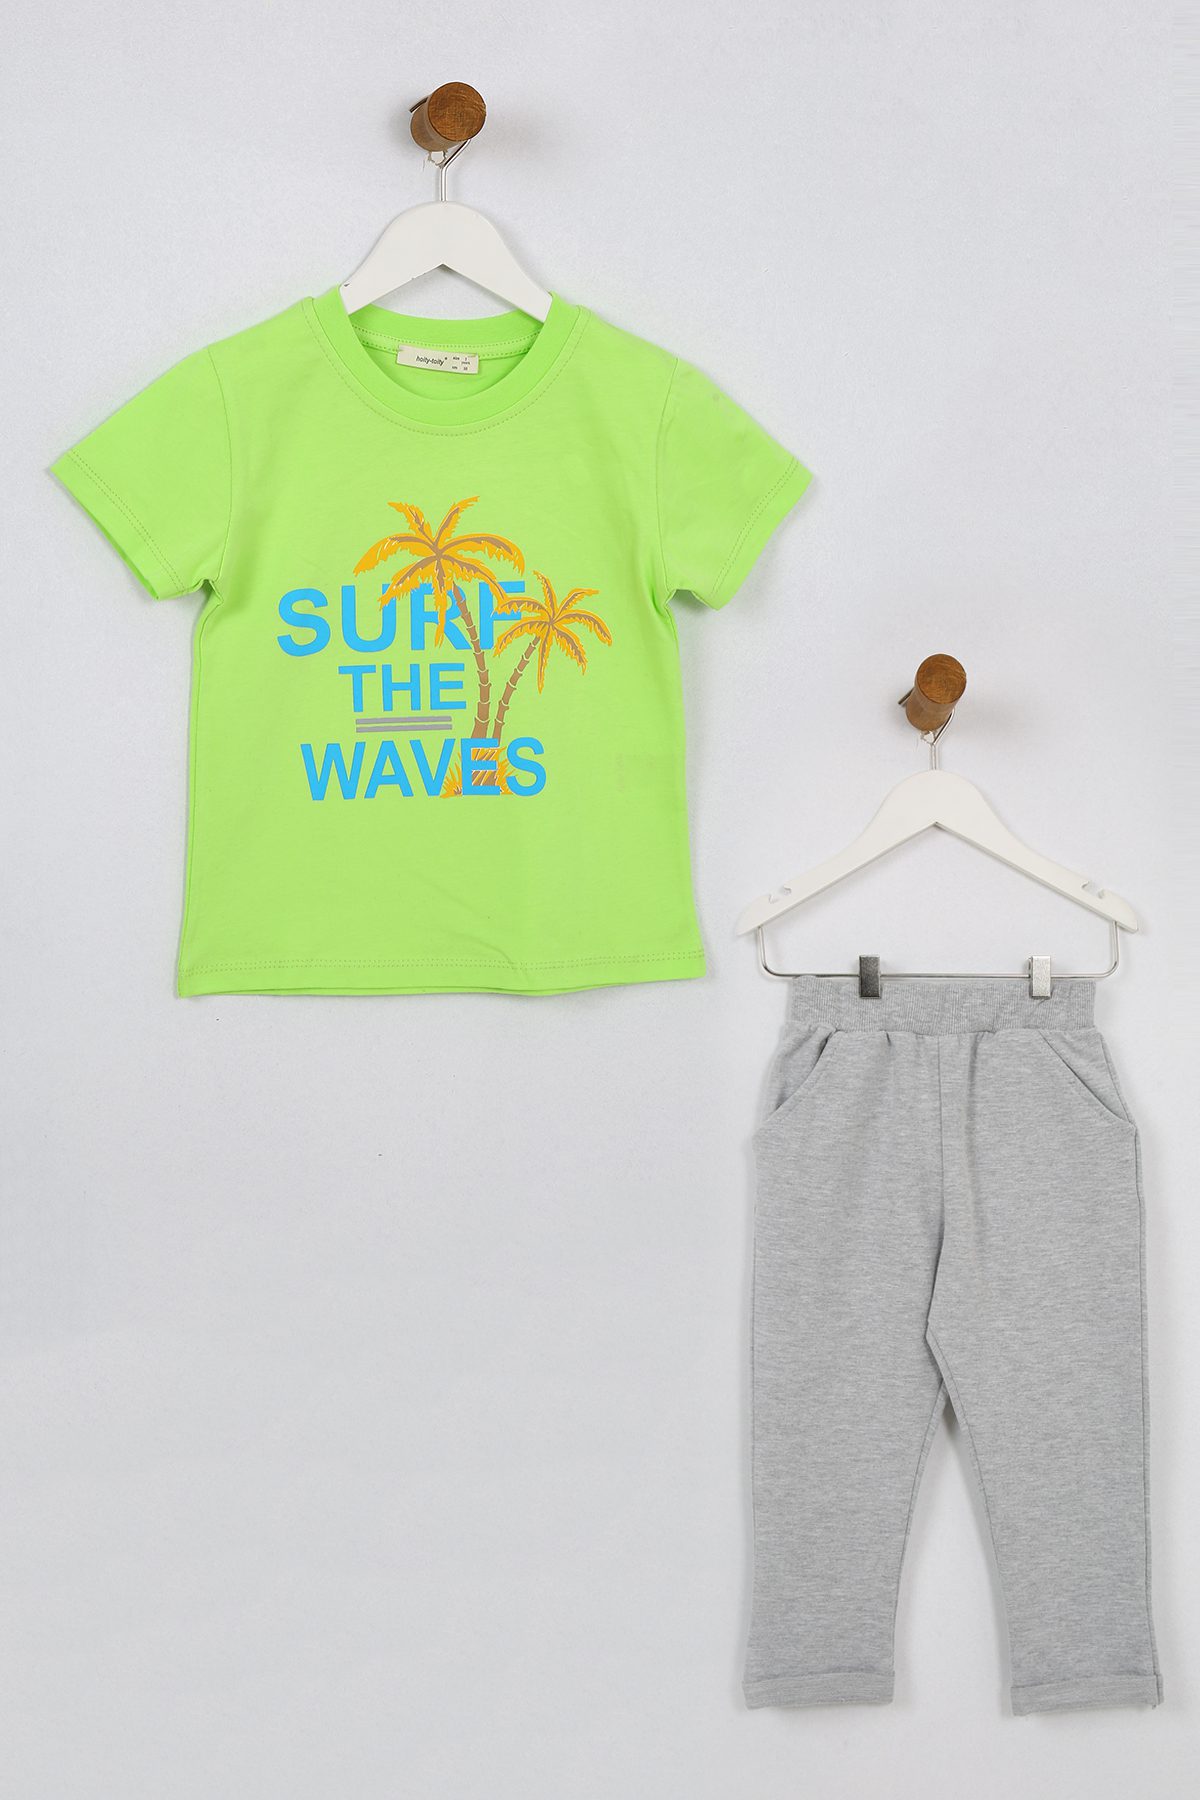 Boy 2 Pieces Set (T-Shirt - Pant) / 3Y | 4Y | 5Y | 6Y | 7Y - Kids Fashion Turkey